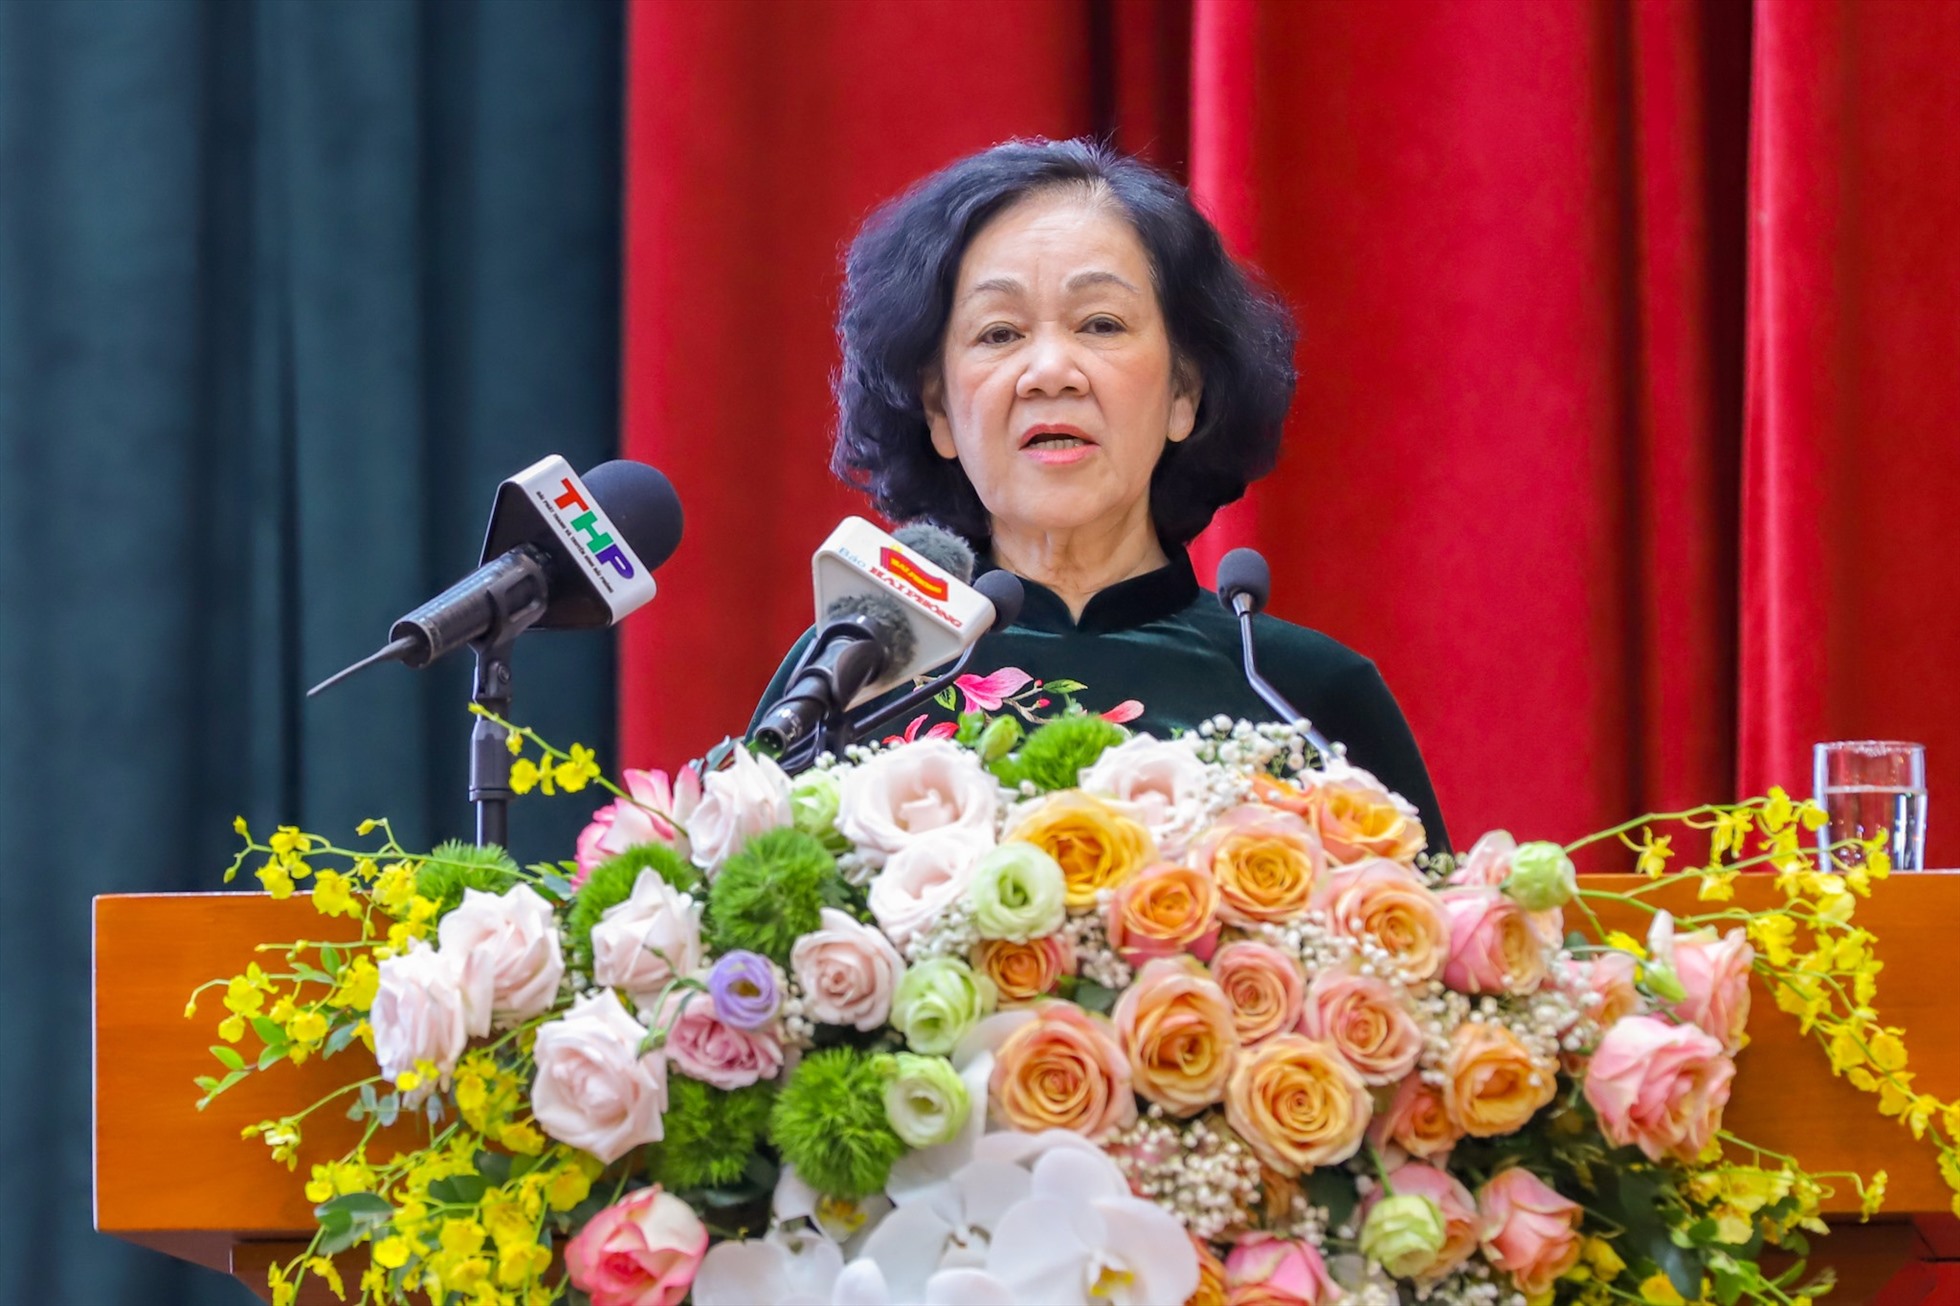 Trưởng Ban Tổ chức Trung ương Trương Thị Mai phát biểu tại buổi công bố Bí thư Thành ủy Hải Phòng sáng ngày 16.1. Ảnh: Đàm Thanh